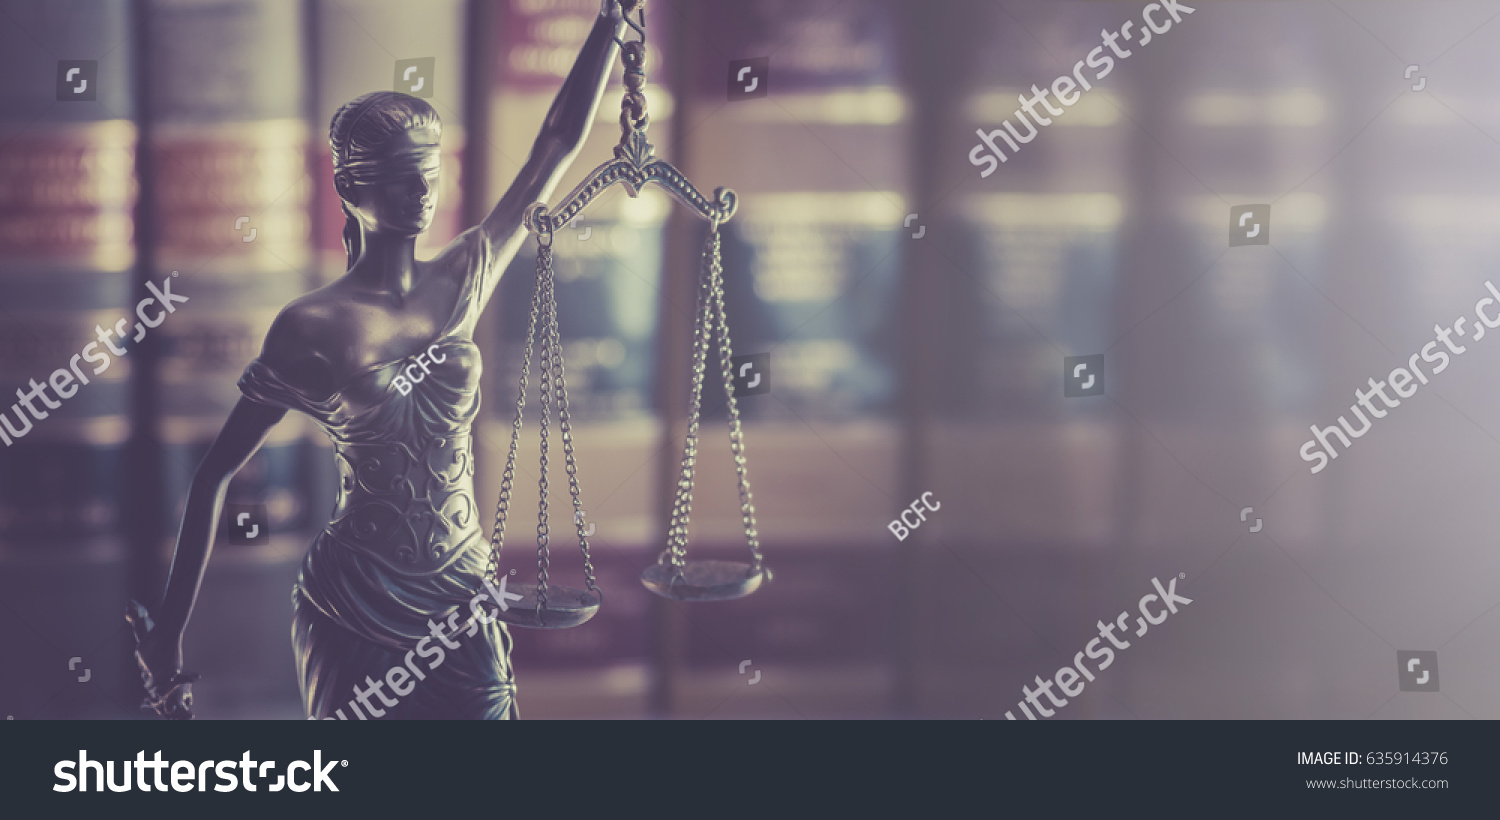 Legal law concept image #635914376